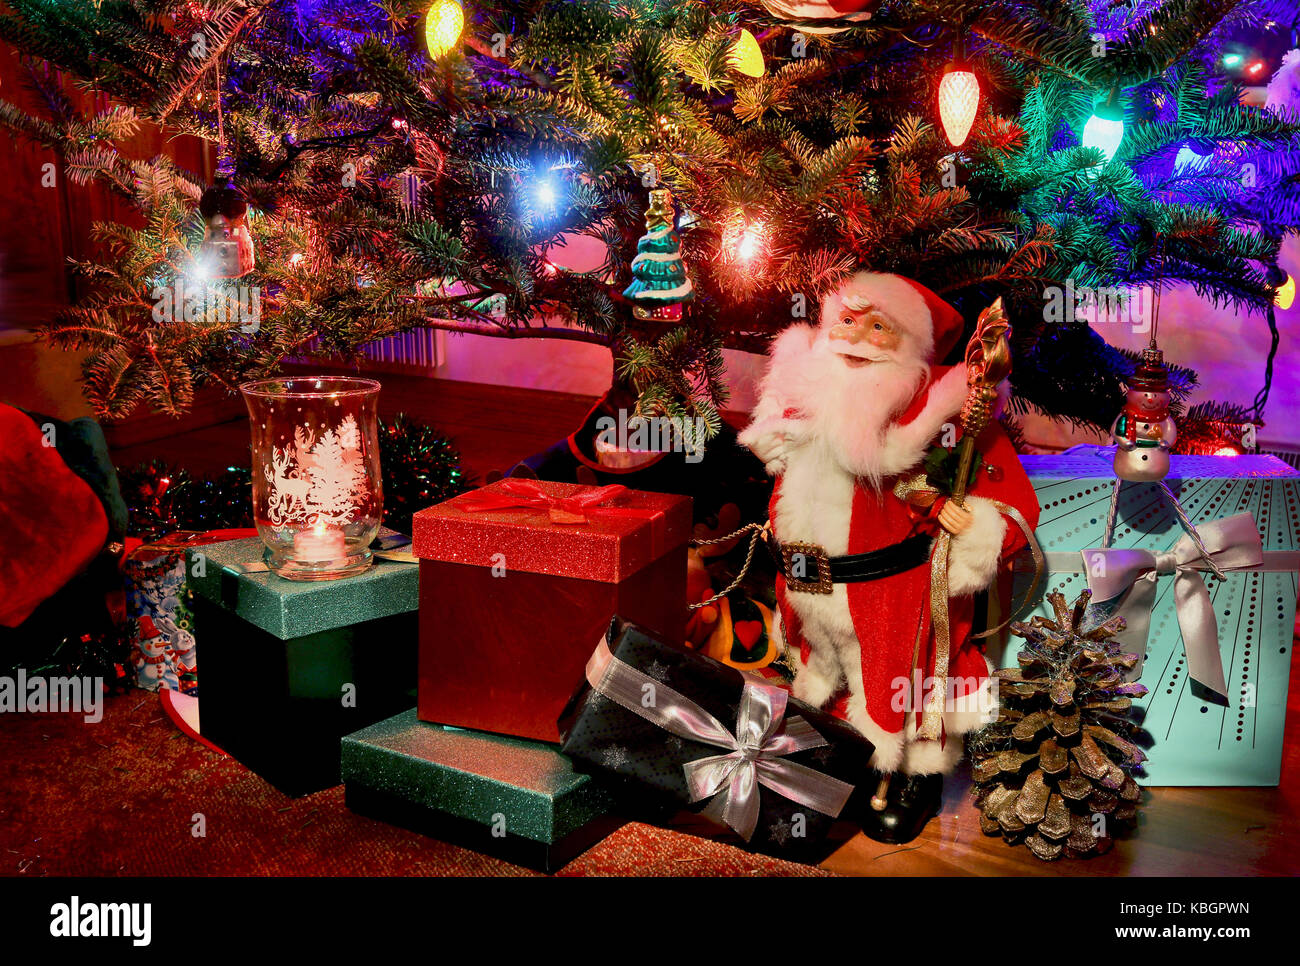 Escena nocturna con brillantes cerca del árbol de Navidad, Papá Noel y cajas de regalo bajo él. bueno para una temporada de tarjetas de felicitación. Foto de stock